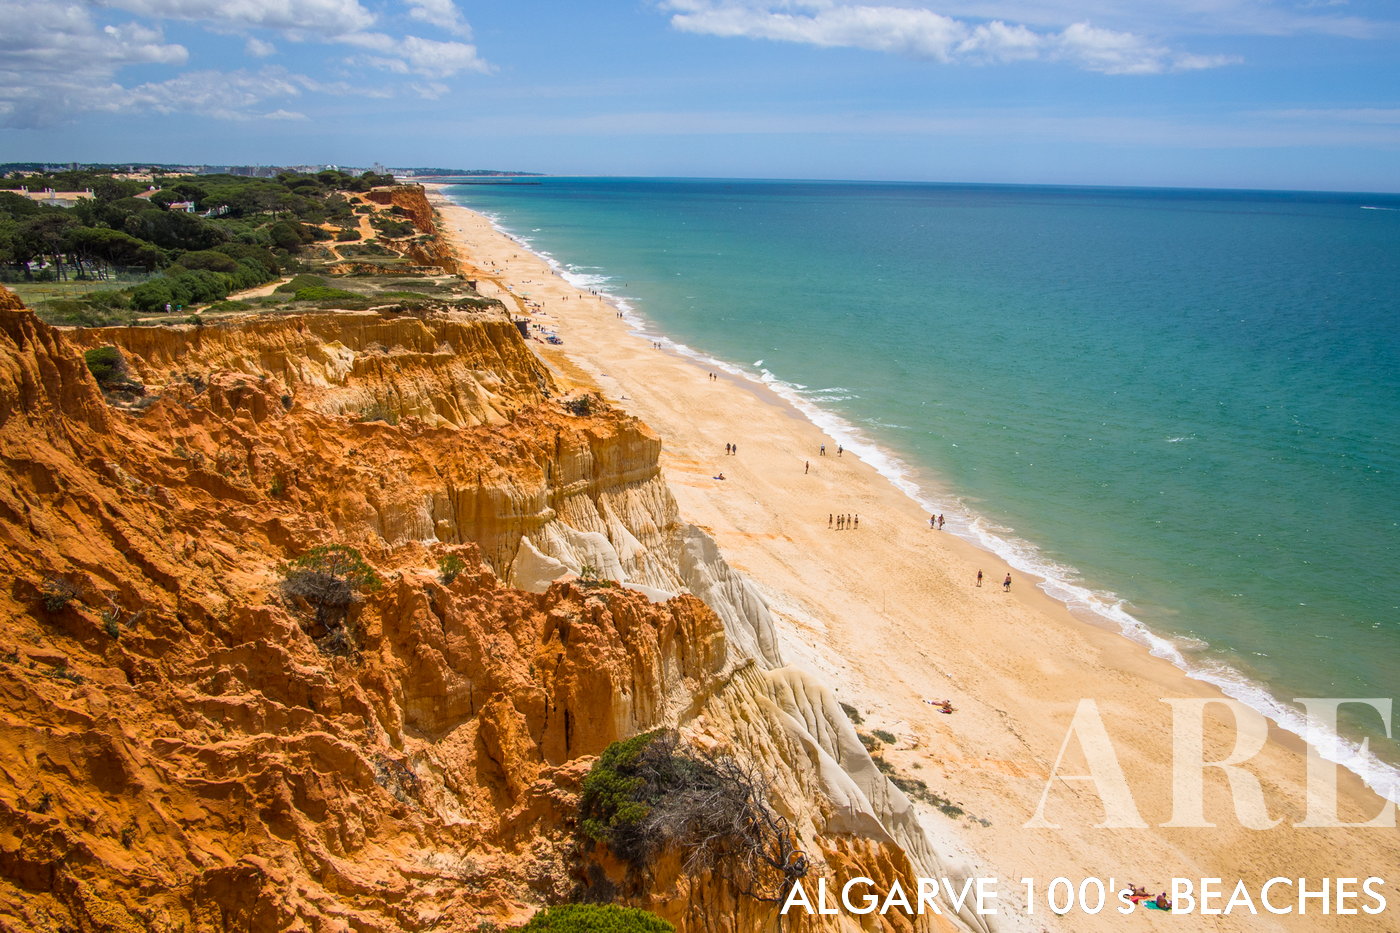 Extendiéndose aproximadamente 5 kilómetros desde Vilamoura hasta Praia do Barranco cerca de Olhos de Água en Albufeira, Falésia Beach ofrece una de las experiencias de playa de mayor calidad en Portugal.